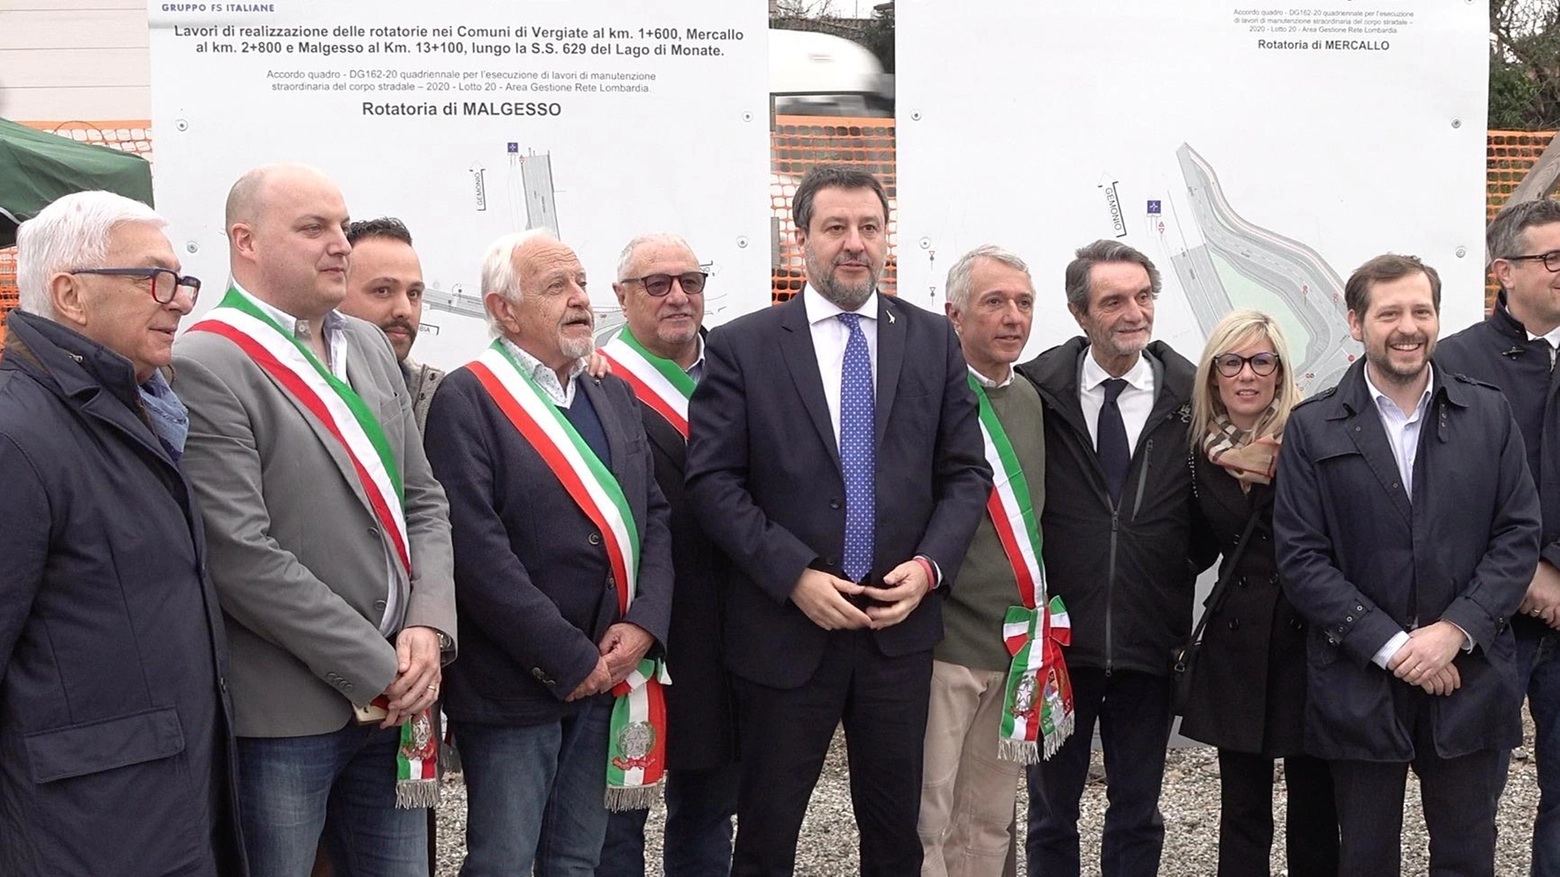 Il ministro Salvini: "Rotonda pronta entro maggio"